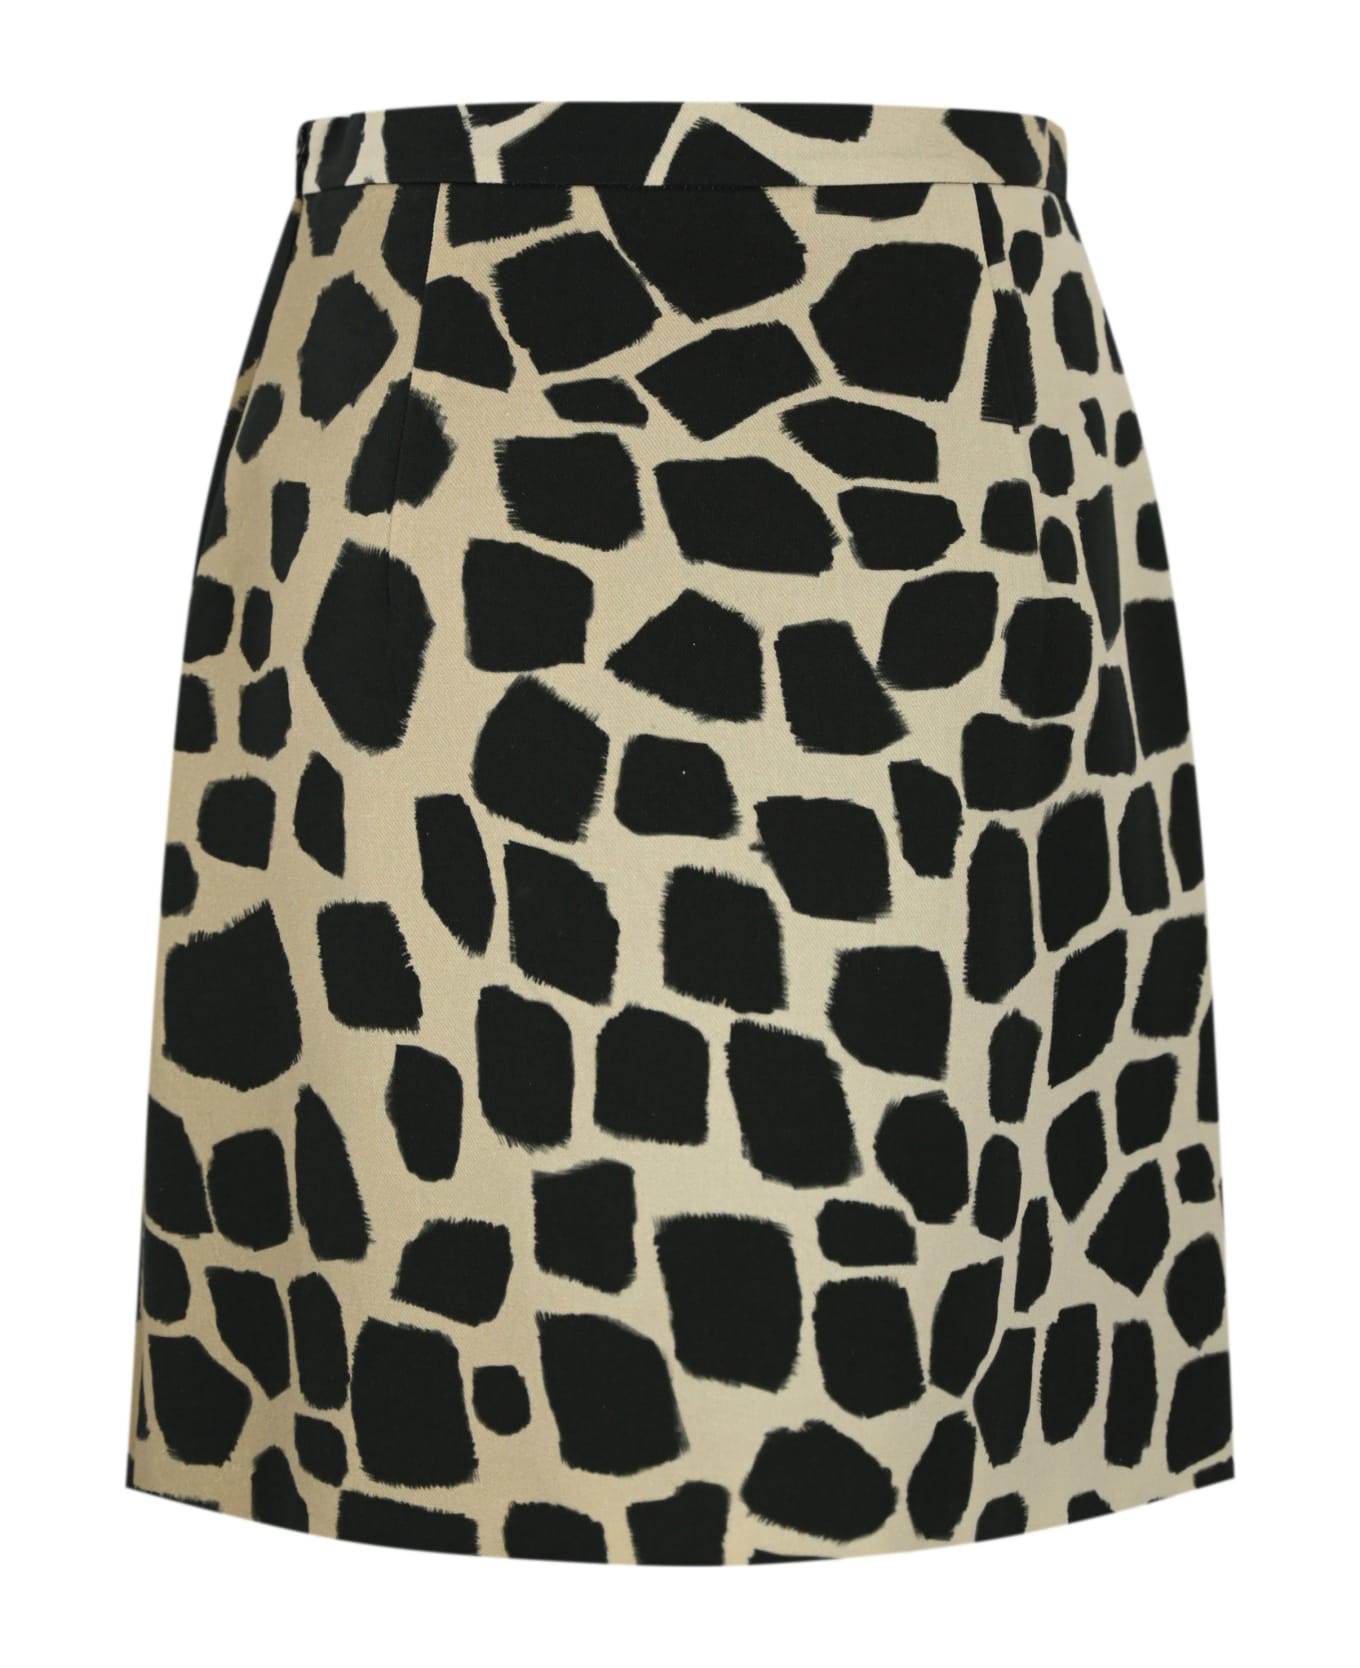 Max Mara Studio "giovane" Cotton And Linen Skirt - Giraffa